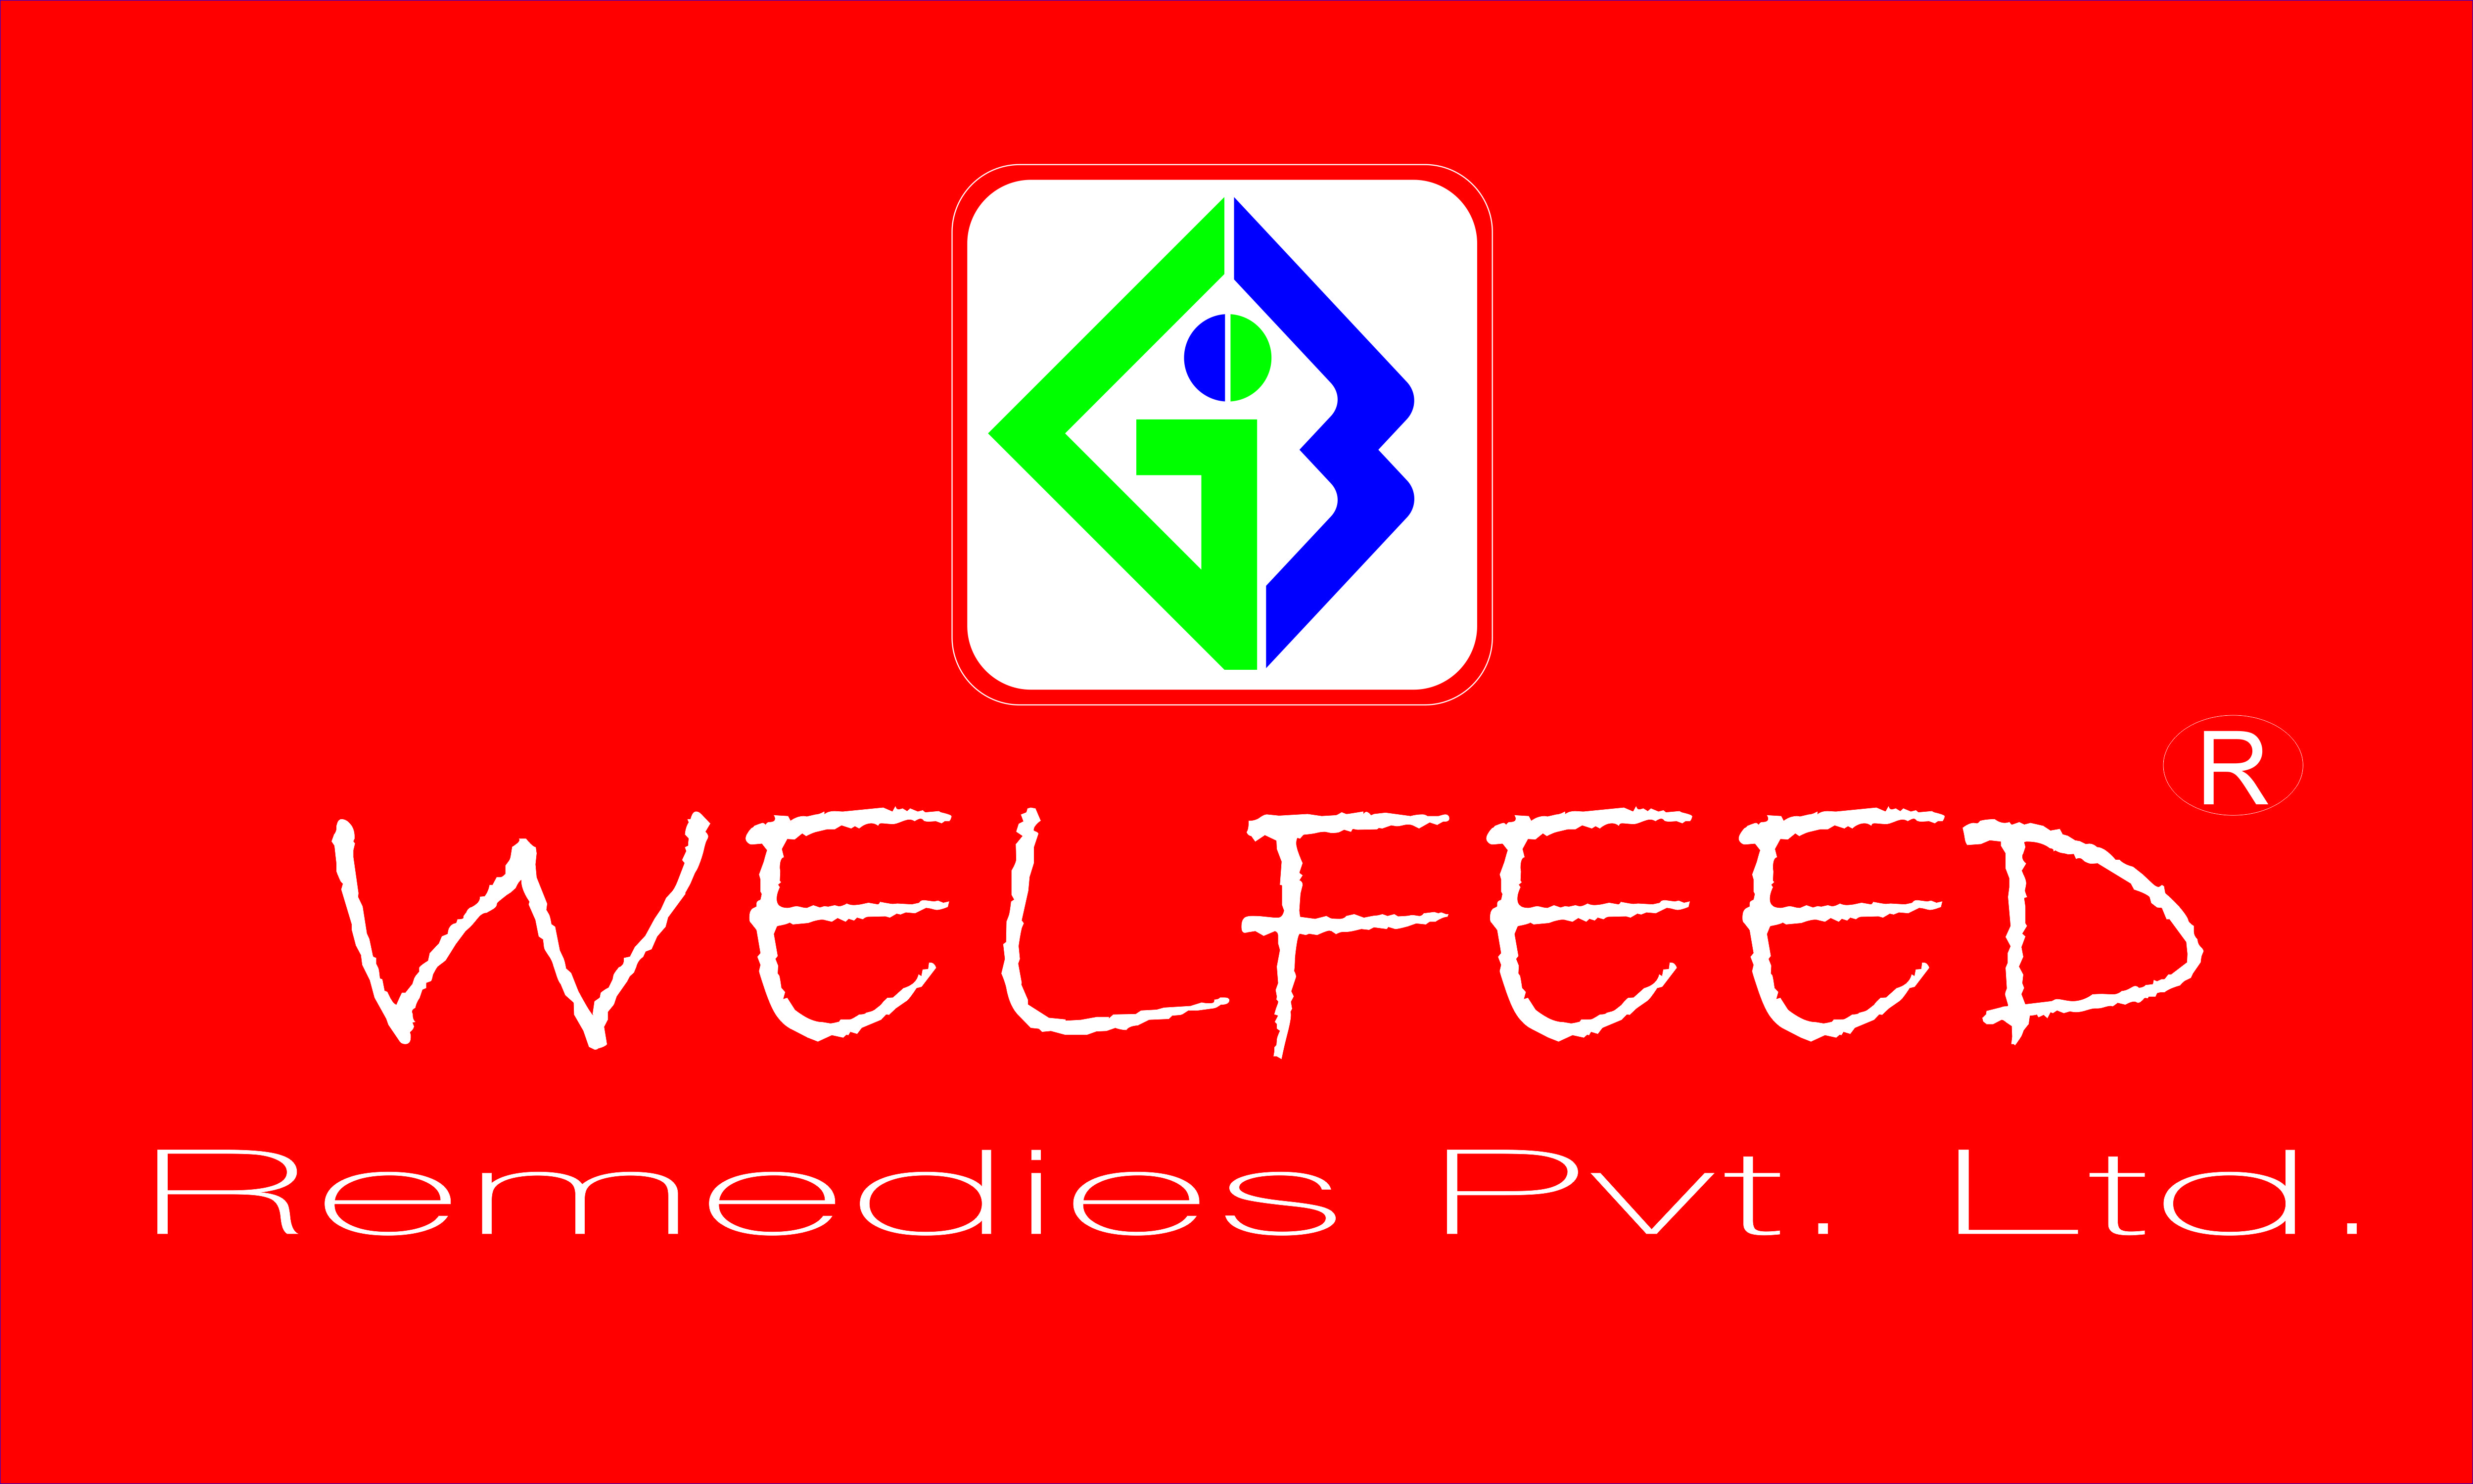 WELFEED REMEDIES PVT LTD